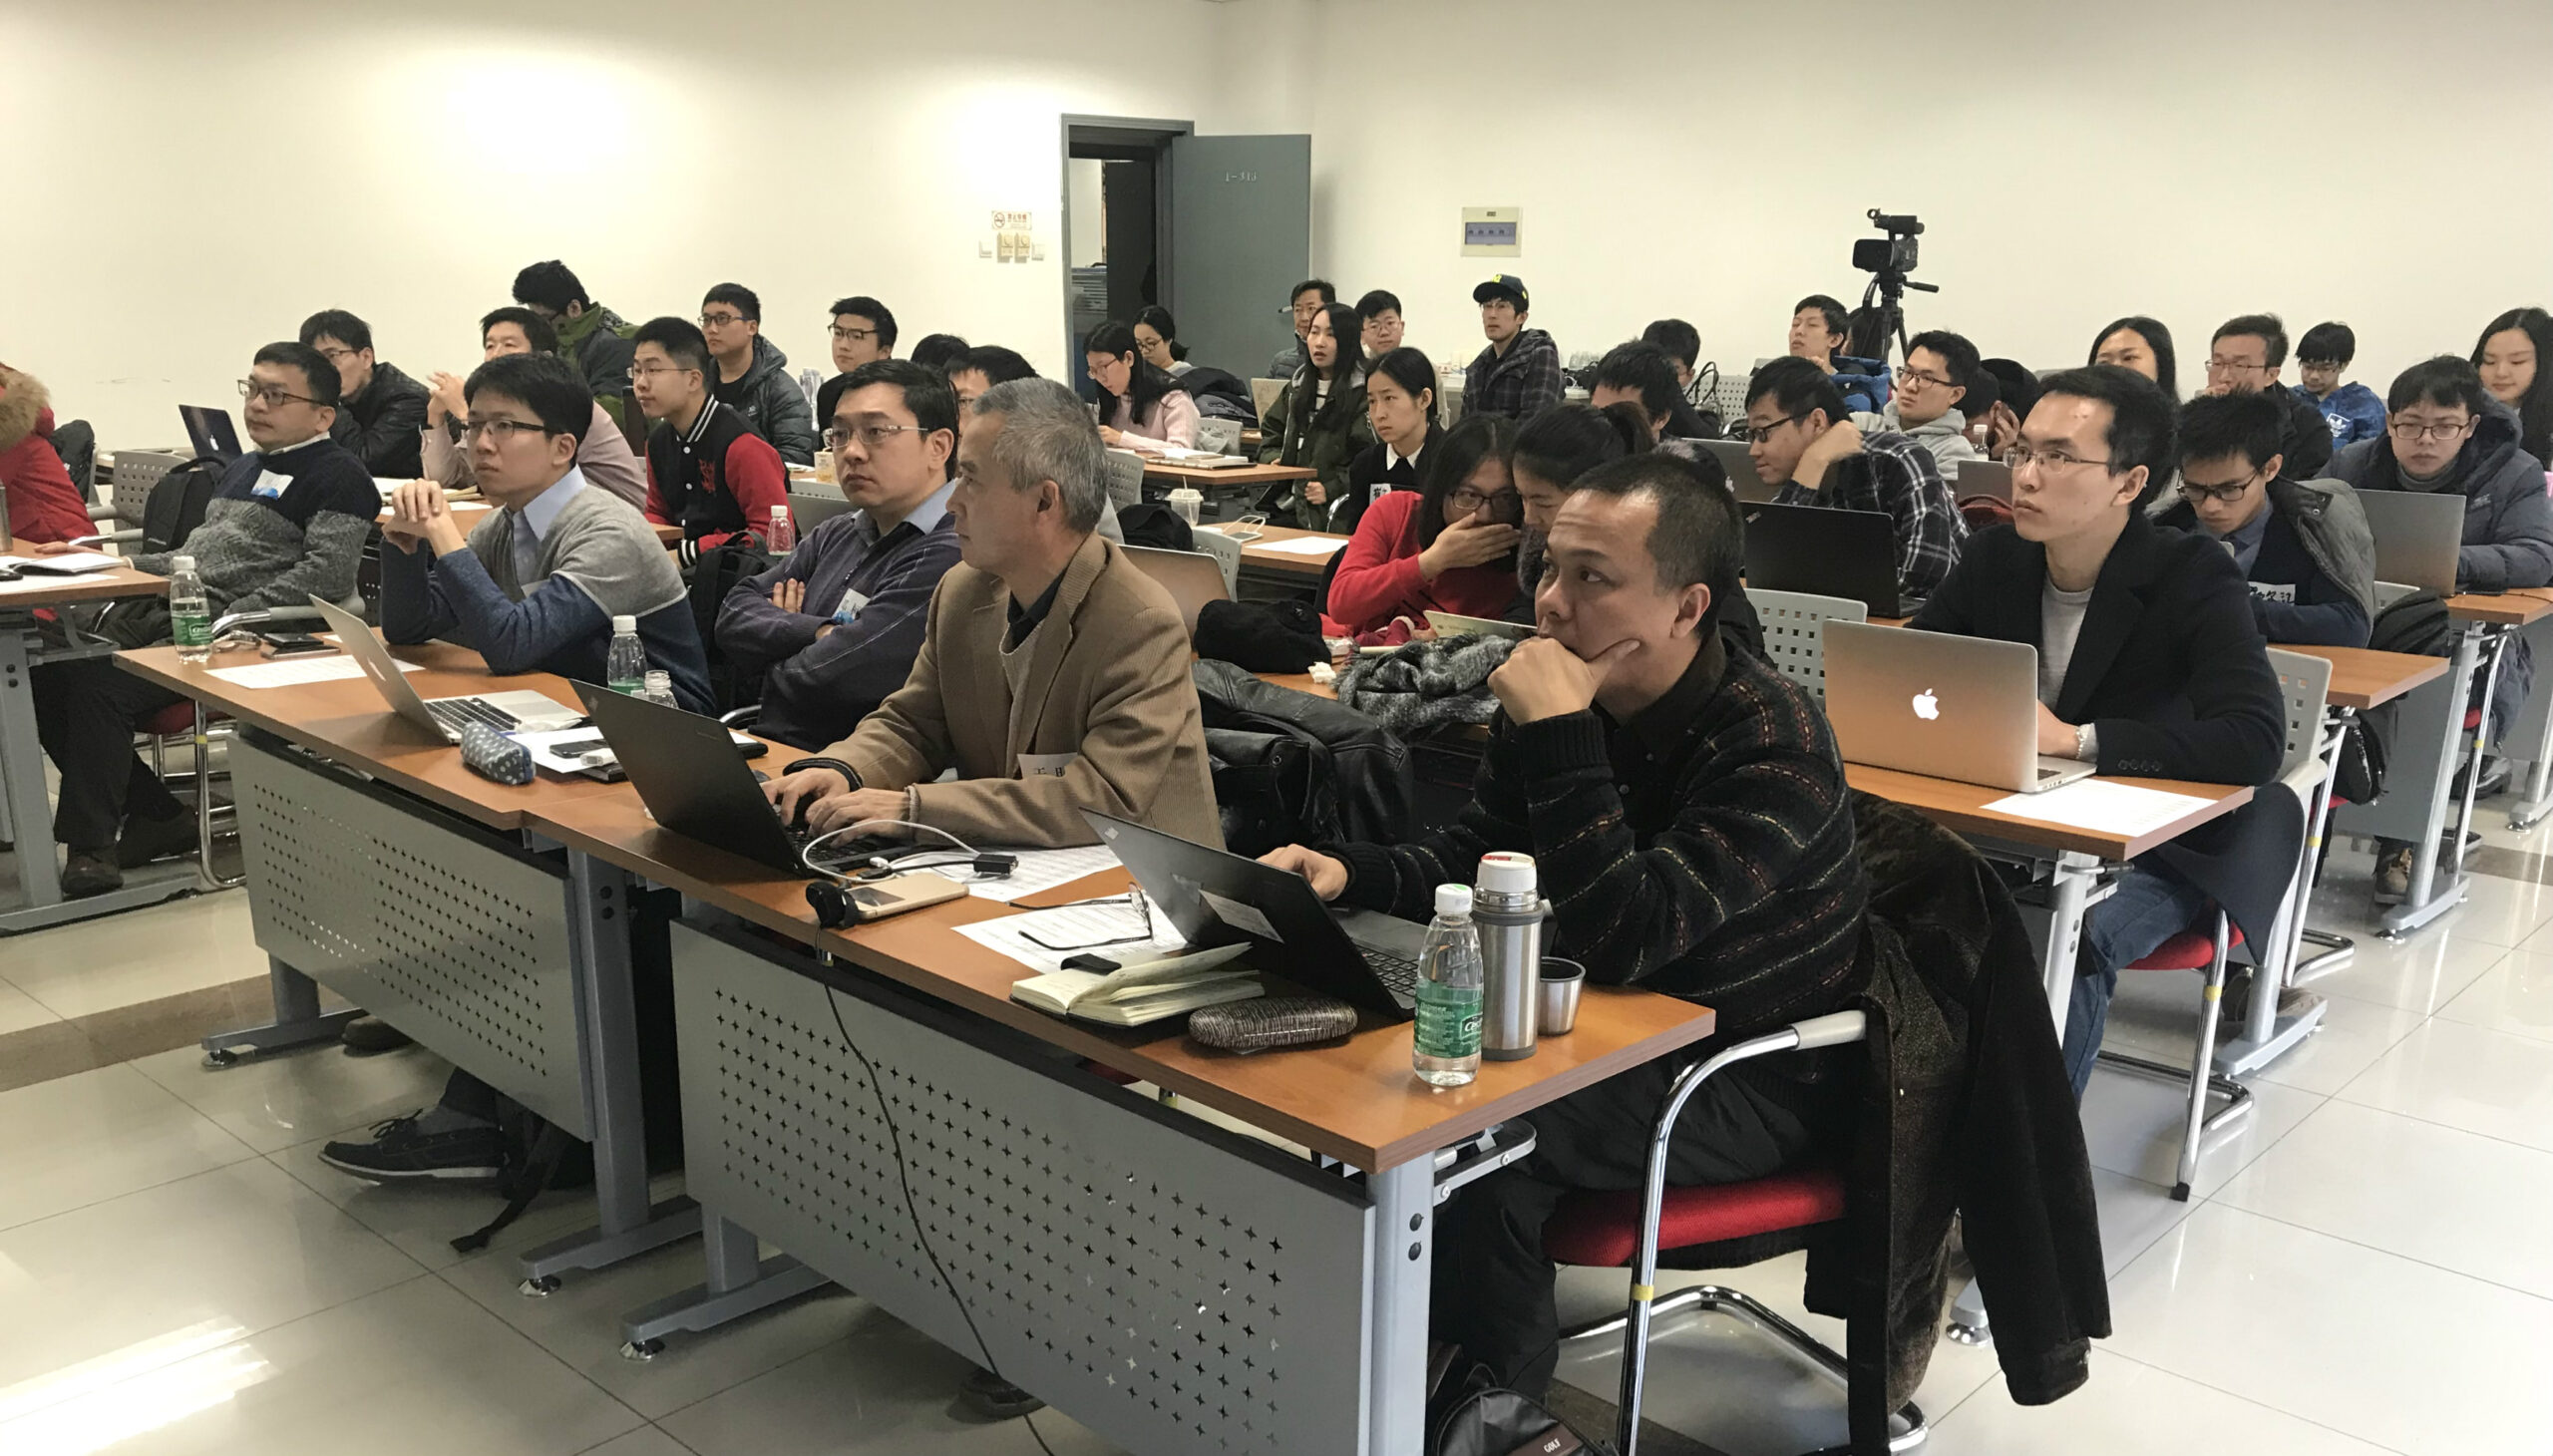 【学术活动】第一届清华大学医学信息学与医疗大数据研讨会